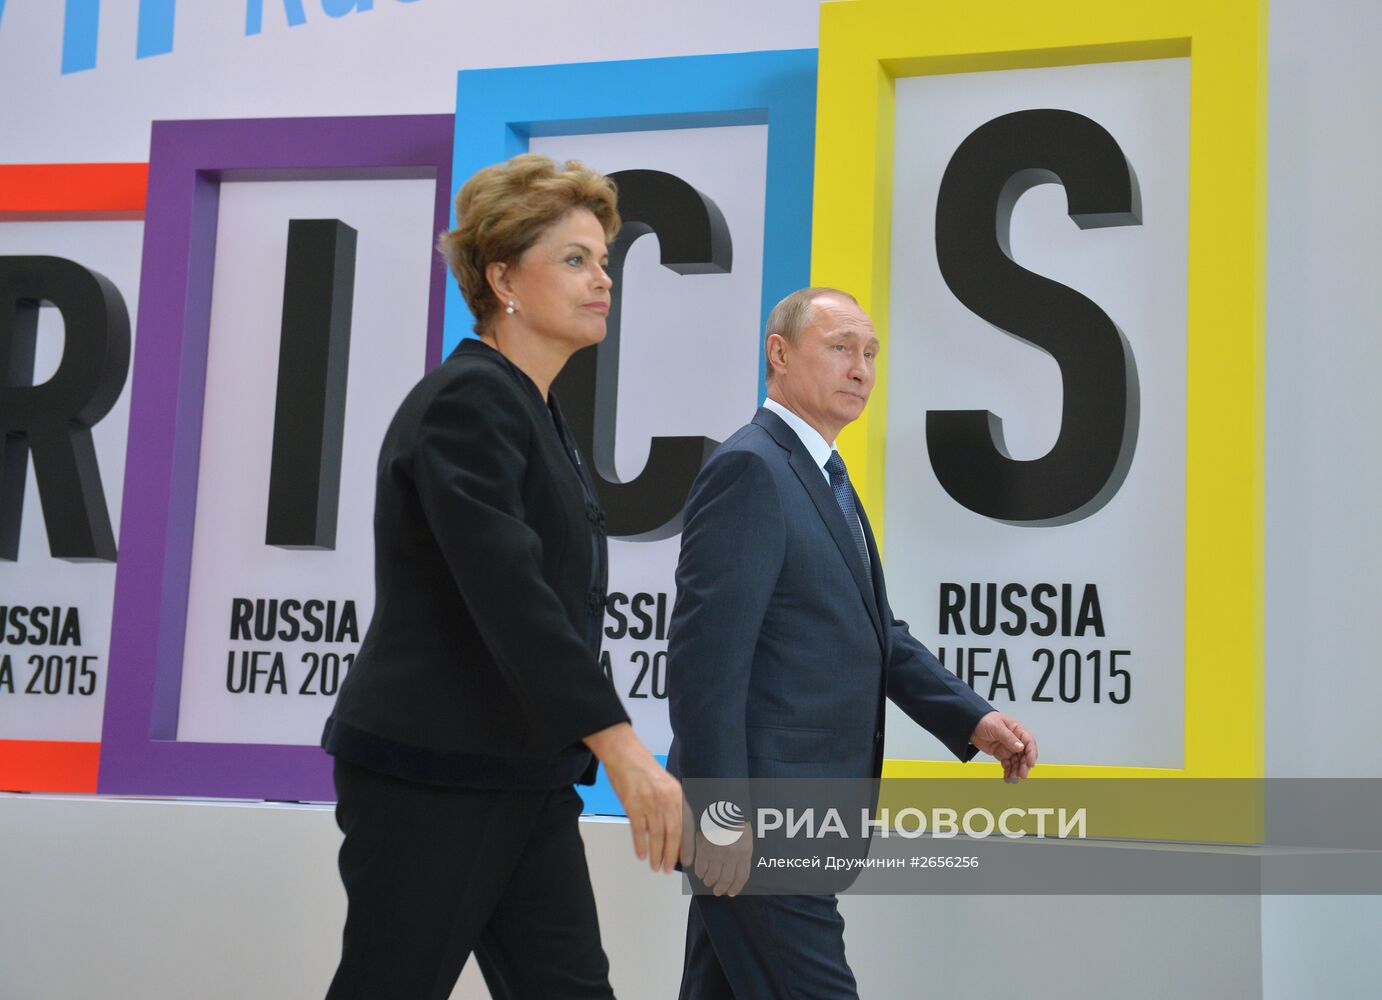 Церемония приветствия Президентом Российской Федерации Владимиром Путиным лидеров БРИКС